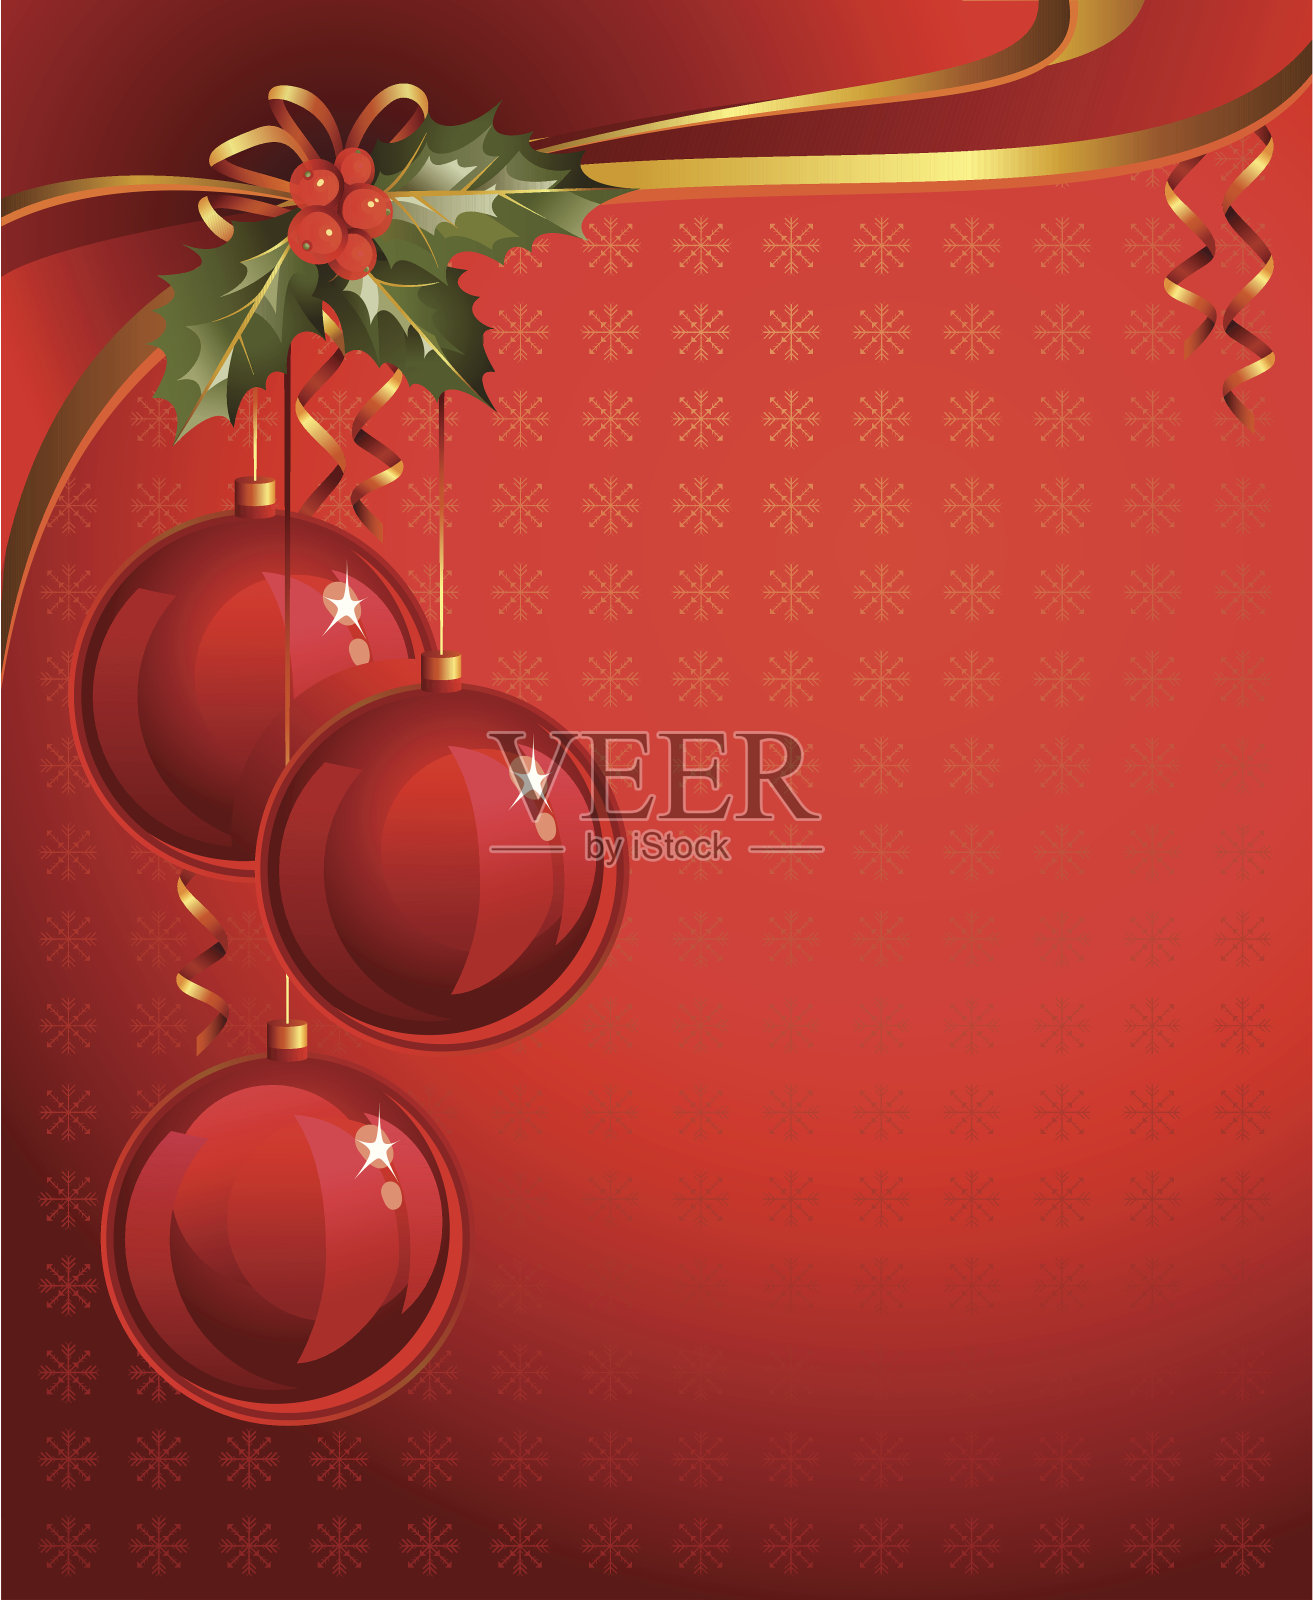 垂直红色圣诞背景设计模板素材